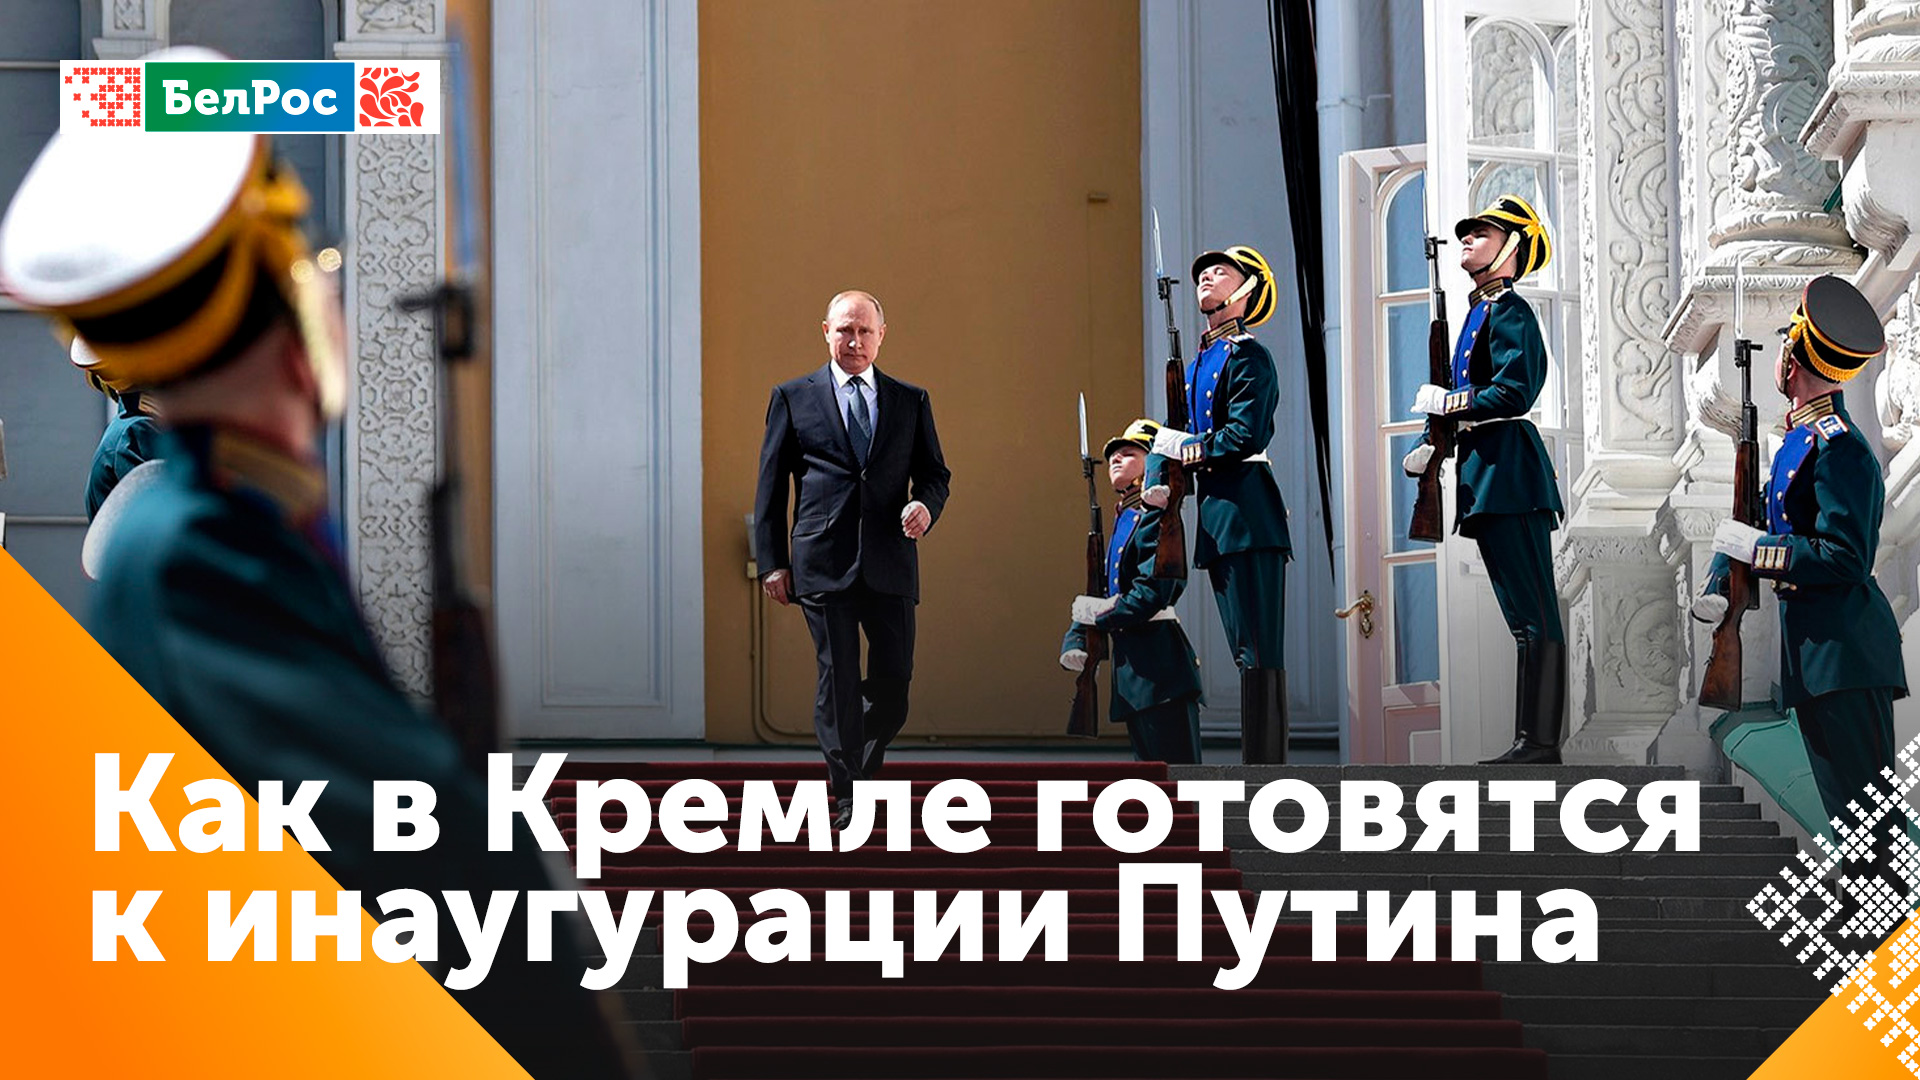 В Кремле завершается подготовка к инаугурации Президента России